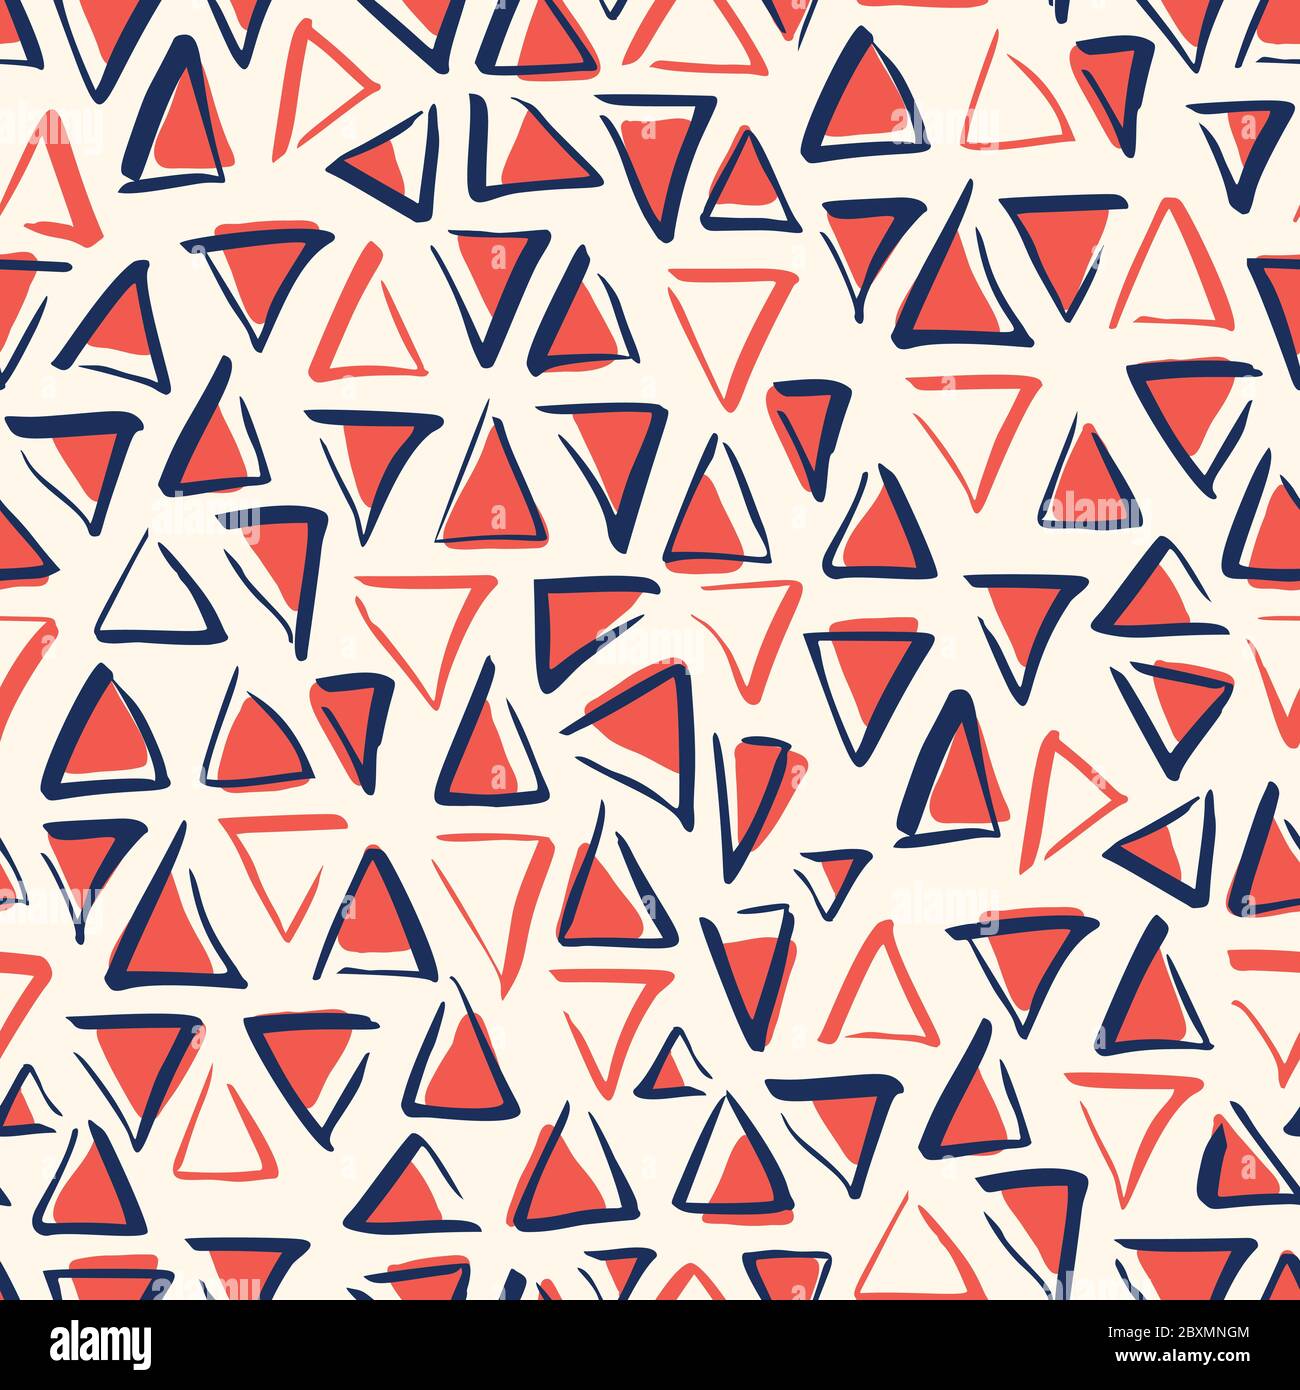 Bule ludique motif géométrique vectoriel blanc et rouge sans couture avec triangles au pinceau dessinés à la main Illustration de Vecteur